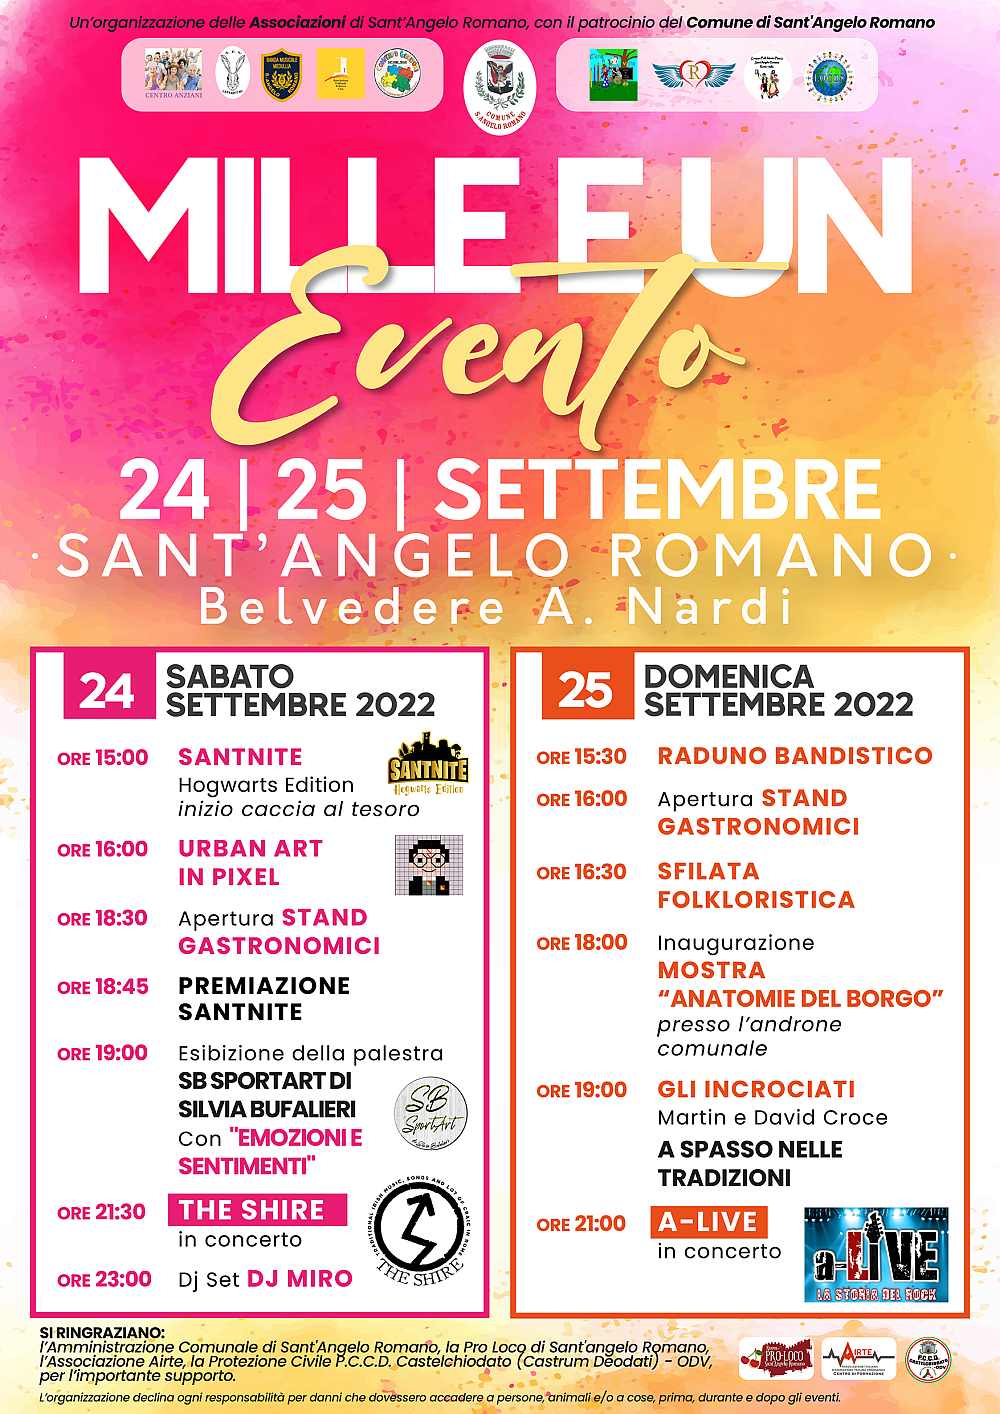 Sant' Angelo Romano (RM)
"Mille e un Evento"
24-25 Settembre 2022